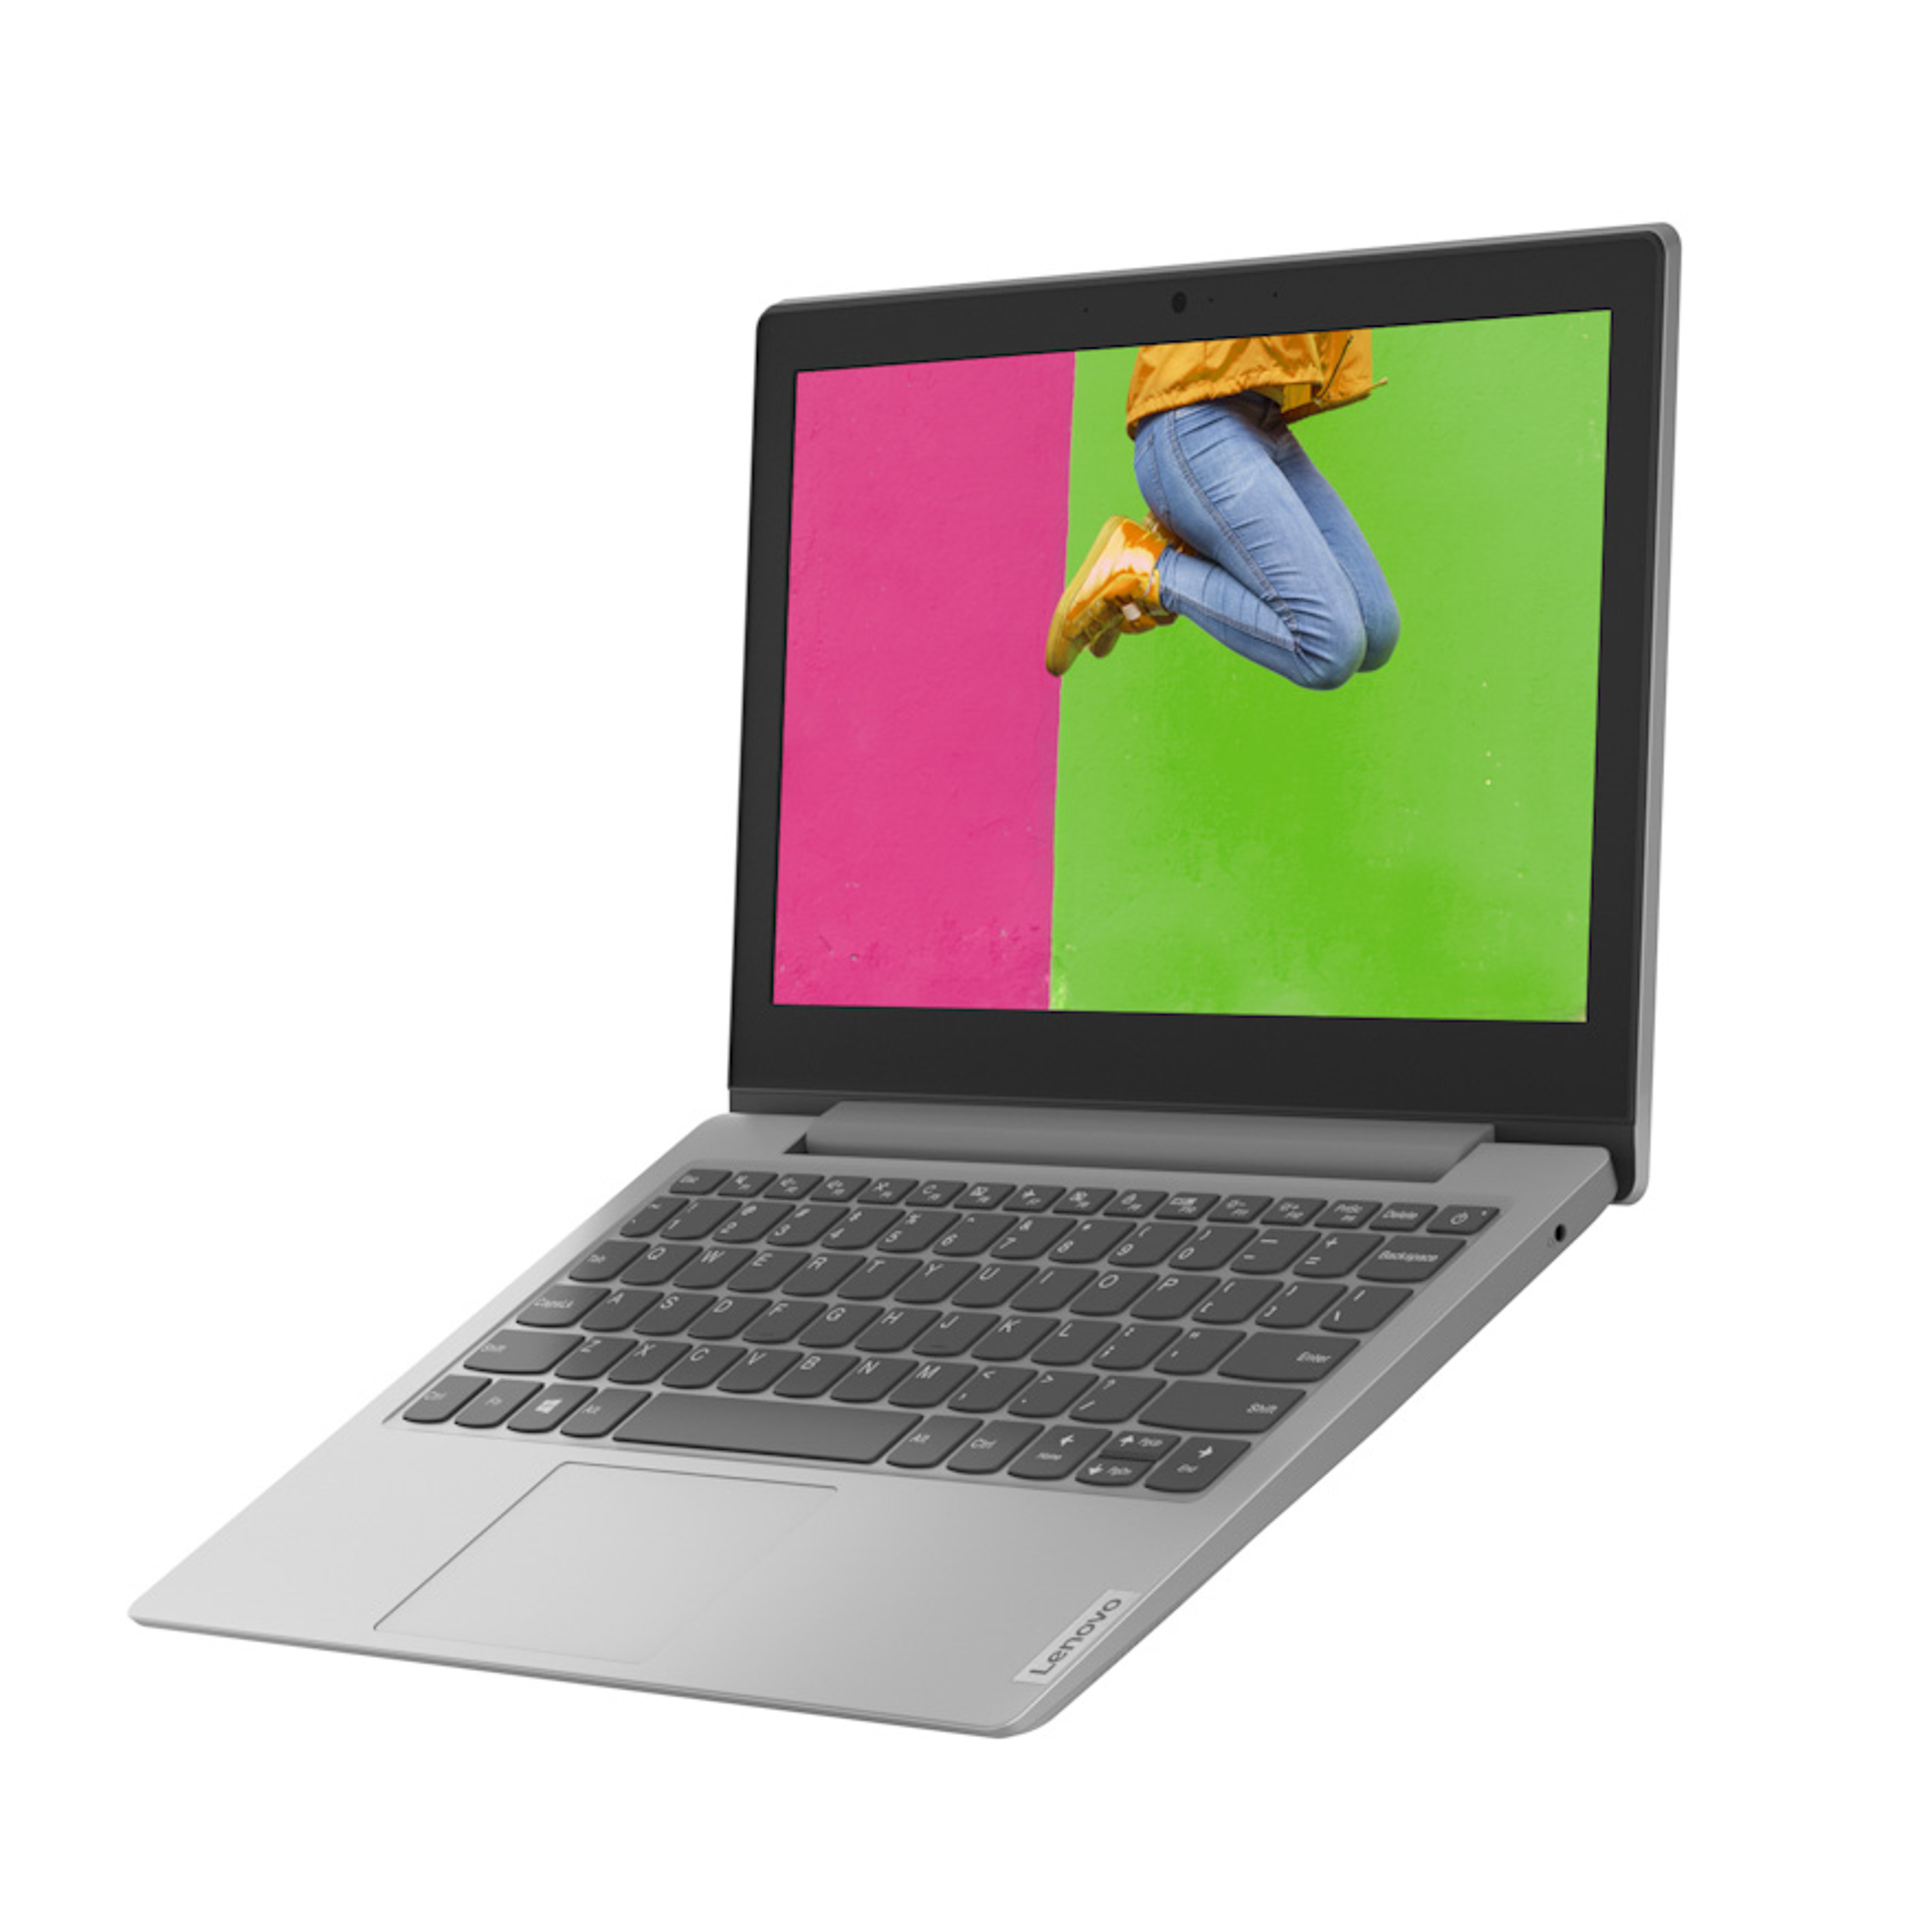 Lenovo ra mắt laptop IdeaPad 1 nhỏ gọn dành cho học sinh